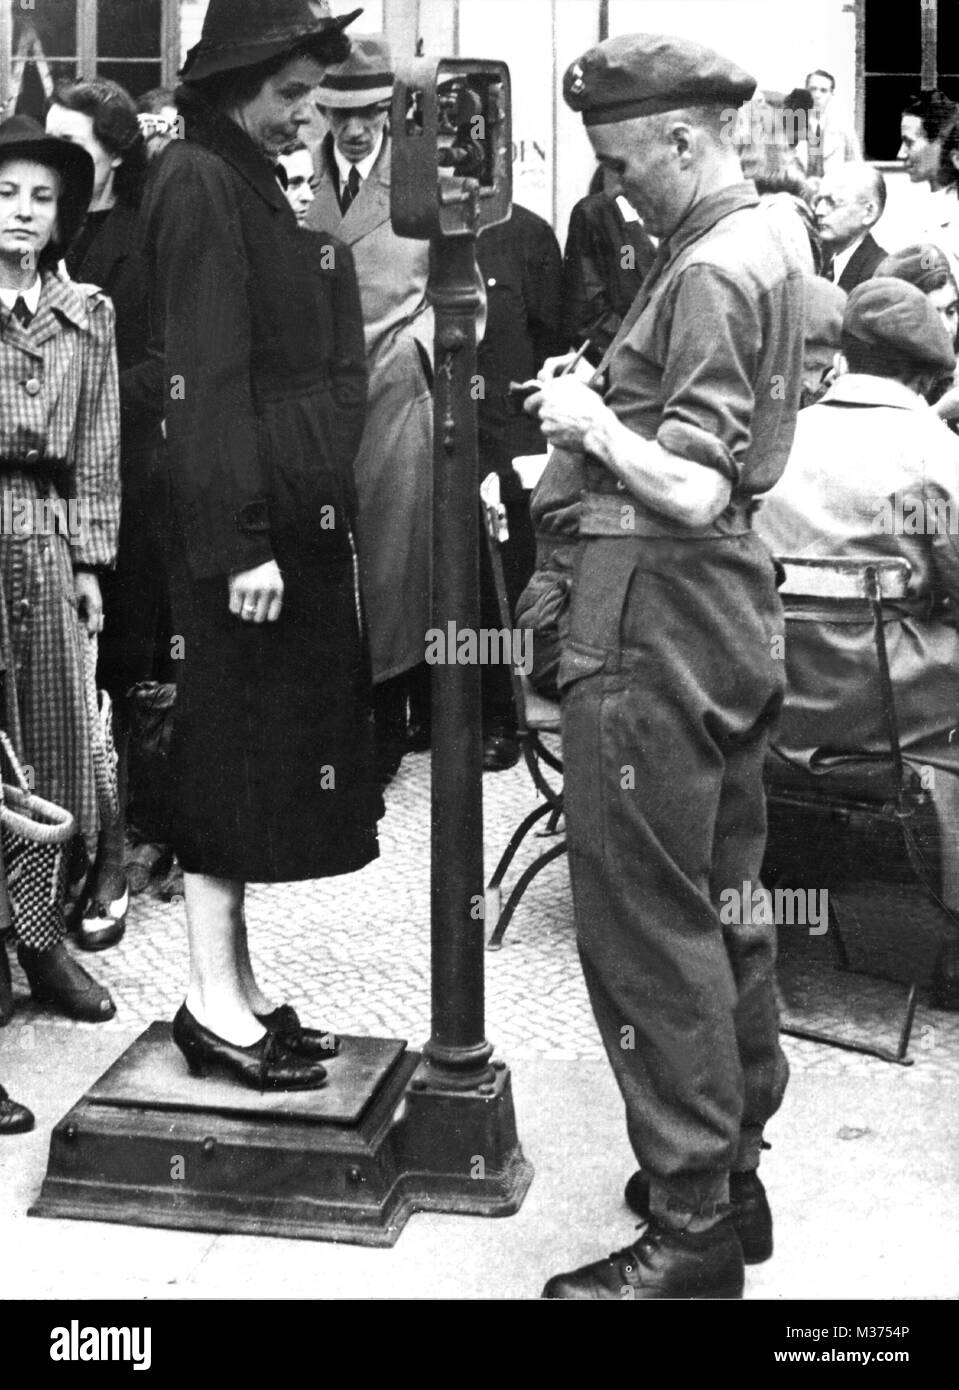 Eine deutsche Frau wird gewogen ihre Ernährungssituation zu bestimmen, im September 1945, in einem Krankenhaus, das durch ein Feld Krankenwagen der Militärregierung in Berlin veranstaltet wurde. | Verwendung weltweit Stockfoto